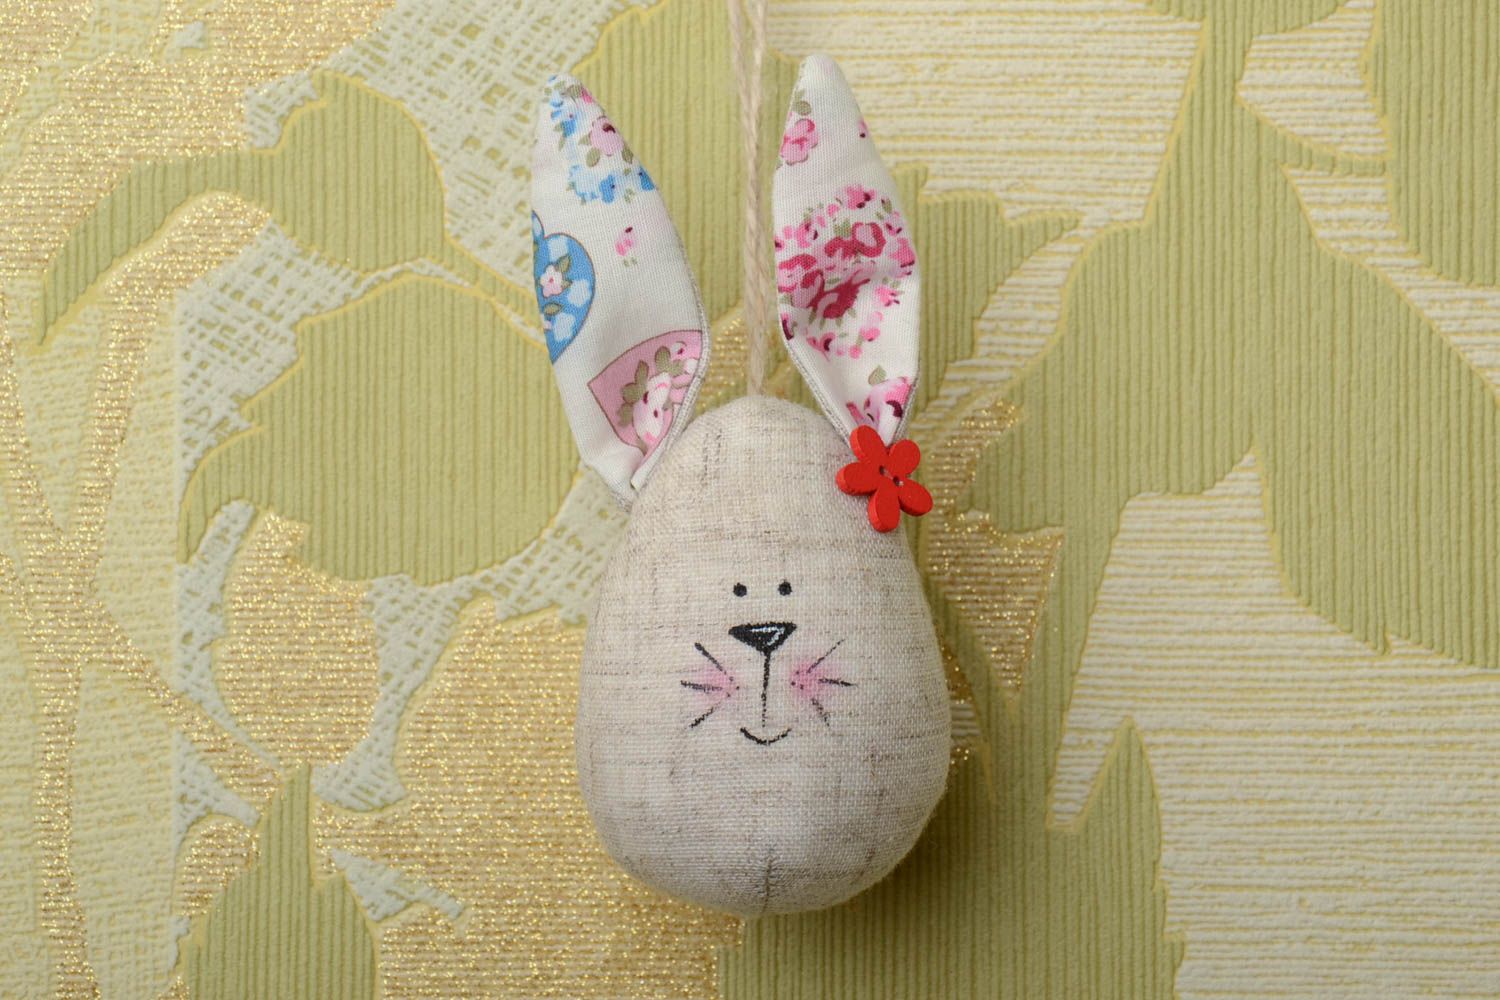 Пасхальная интерьерная подвеска кролик из хлопковой ткани ручной работы фото 1